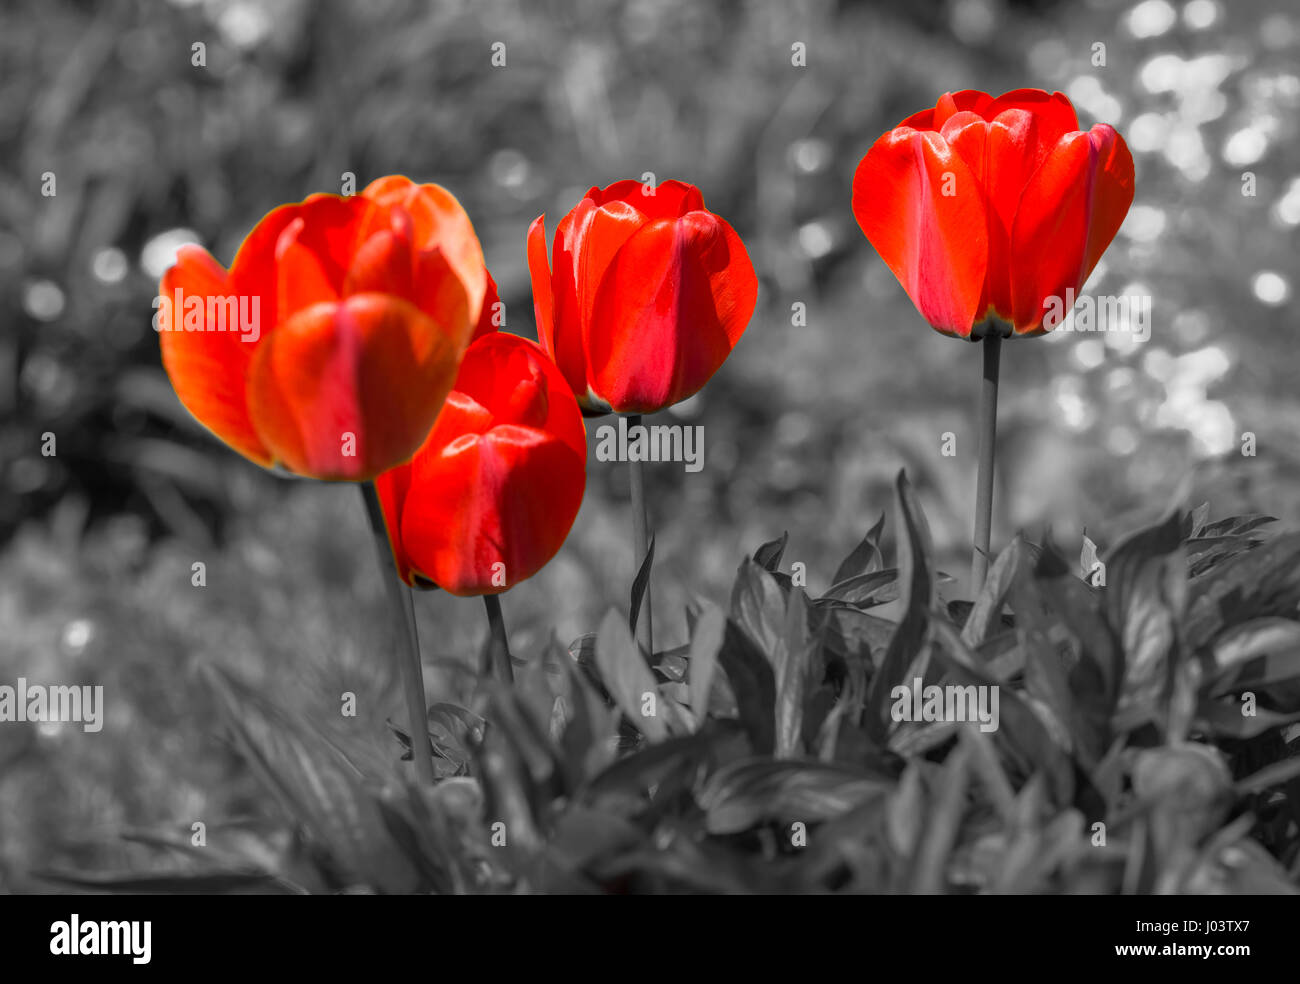 Tulipes rouges (Tulipa) se détachant sur un fond monochrome, prises au printemps dans le West Sussex, Angleterre, Royaume-Uni. Couleur sélective. Couleur sélective. Banque D'Images